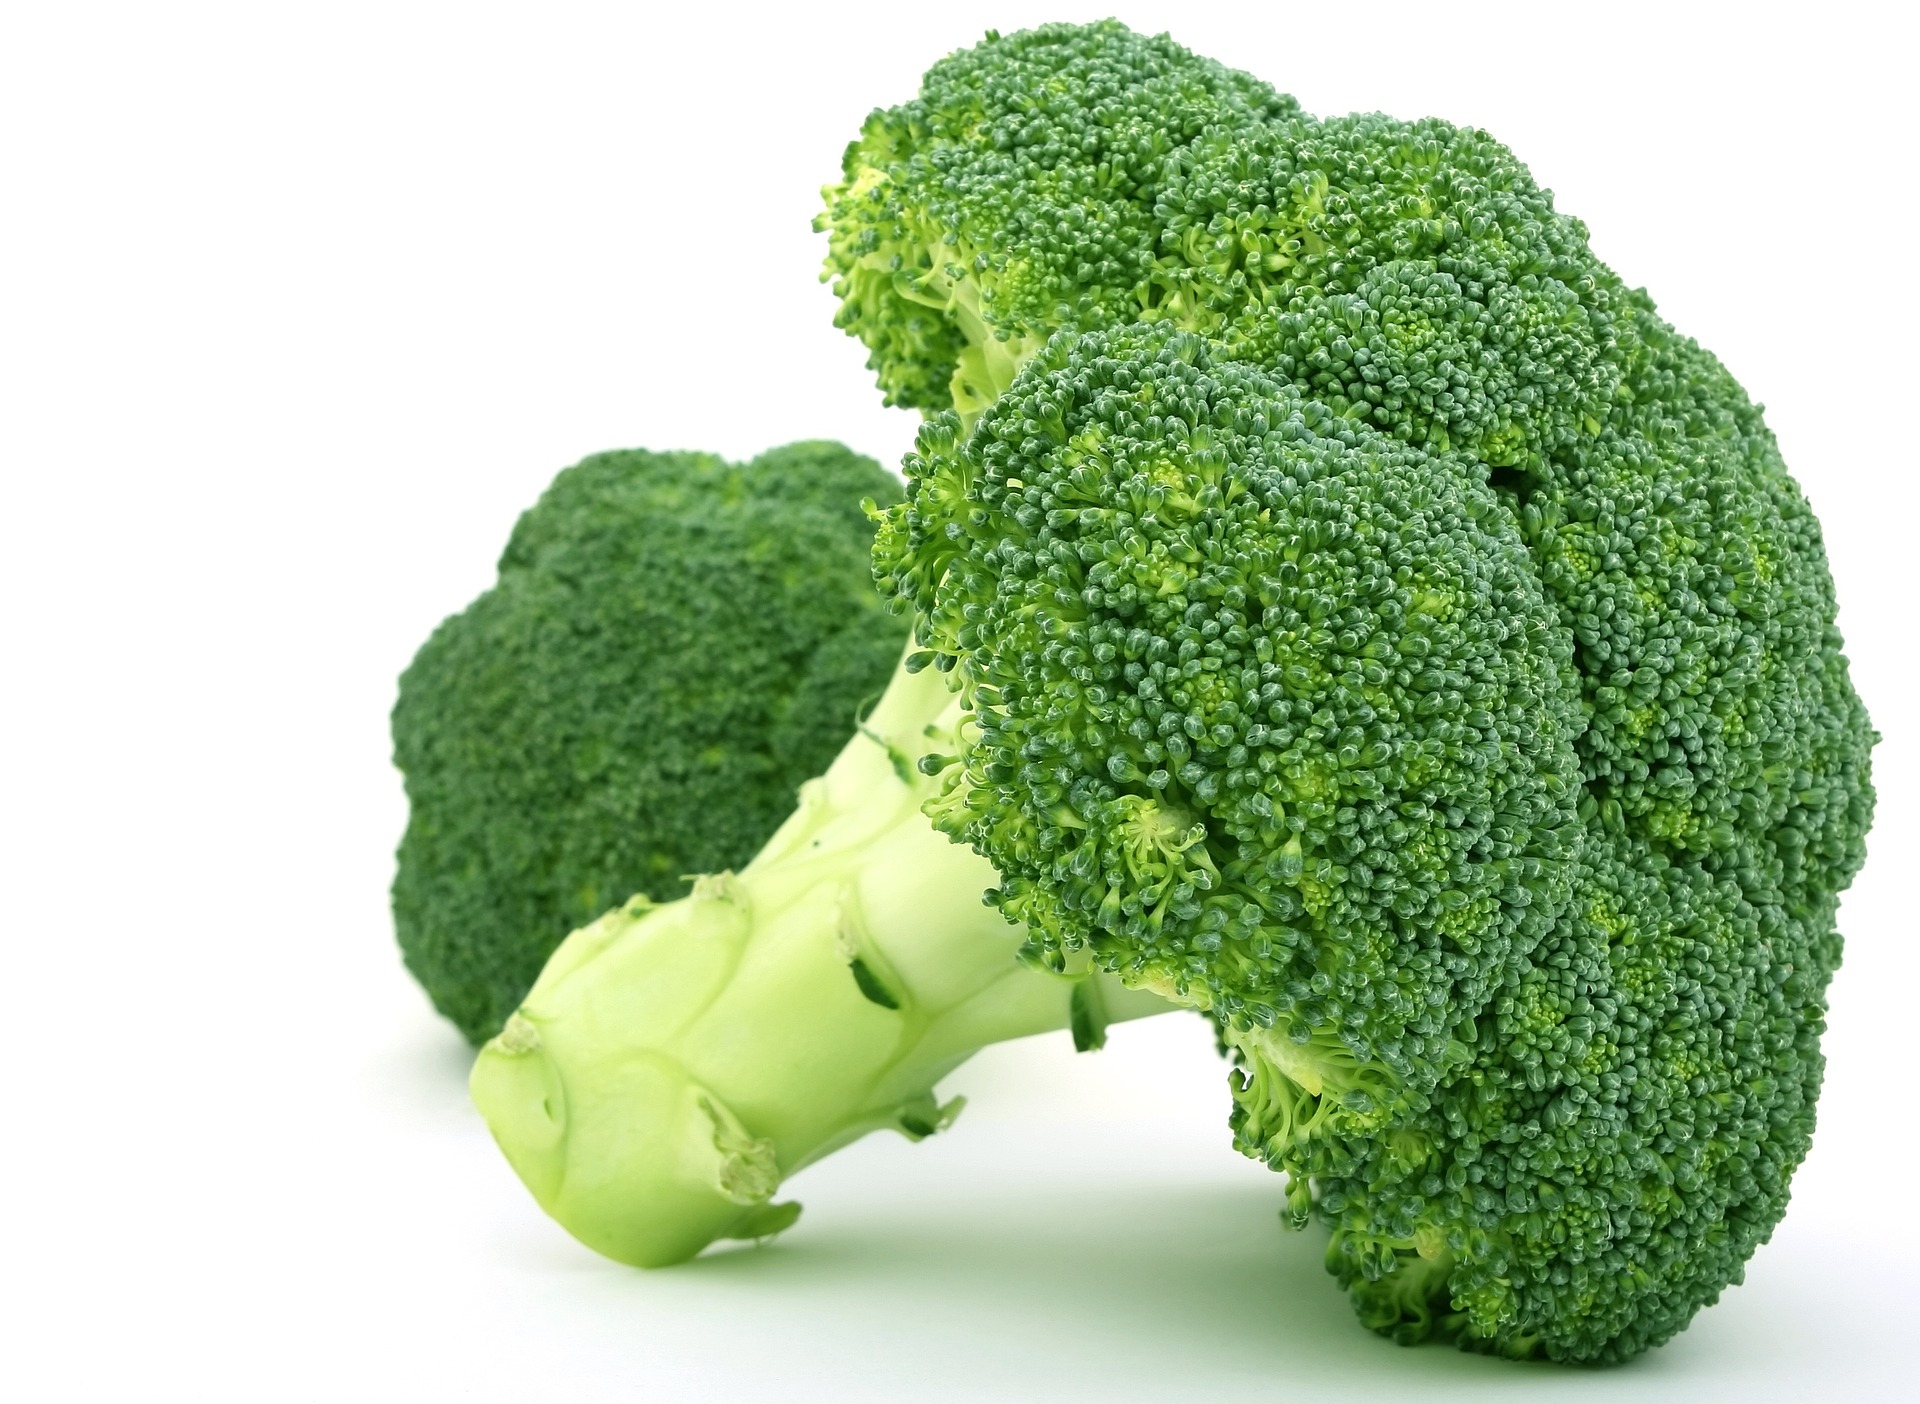 บล็อคโคลี่ (Broccoli Extract) — ผลิตภัณฑ์เสริมอาหารบุญ  เป็นผลิตภัณฑ์เสริมอาหารที่ผู้บริโภคทานอันดับหนึ่ง ผลิตภัณฑ์เสริมอาหารบุญ  “บำรุงกระเพาะอาหาร” ผลิต